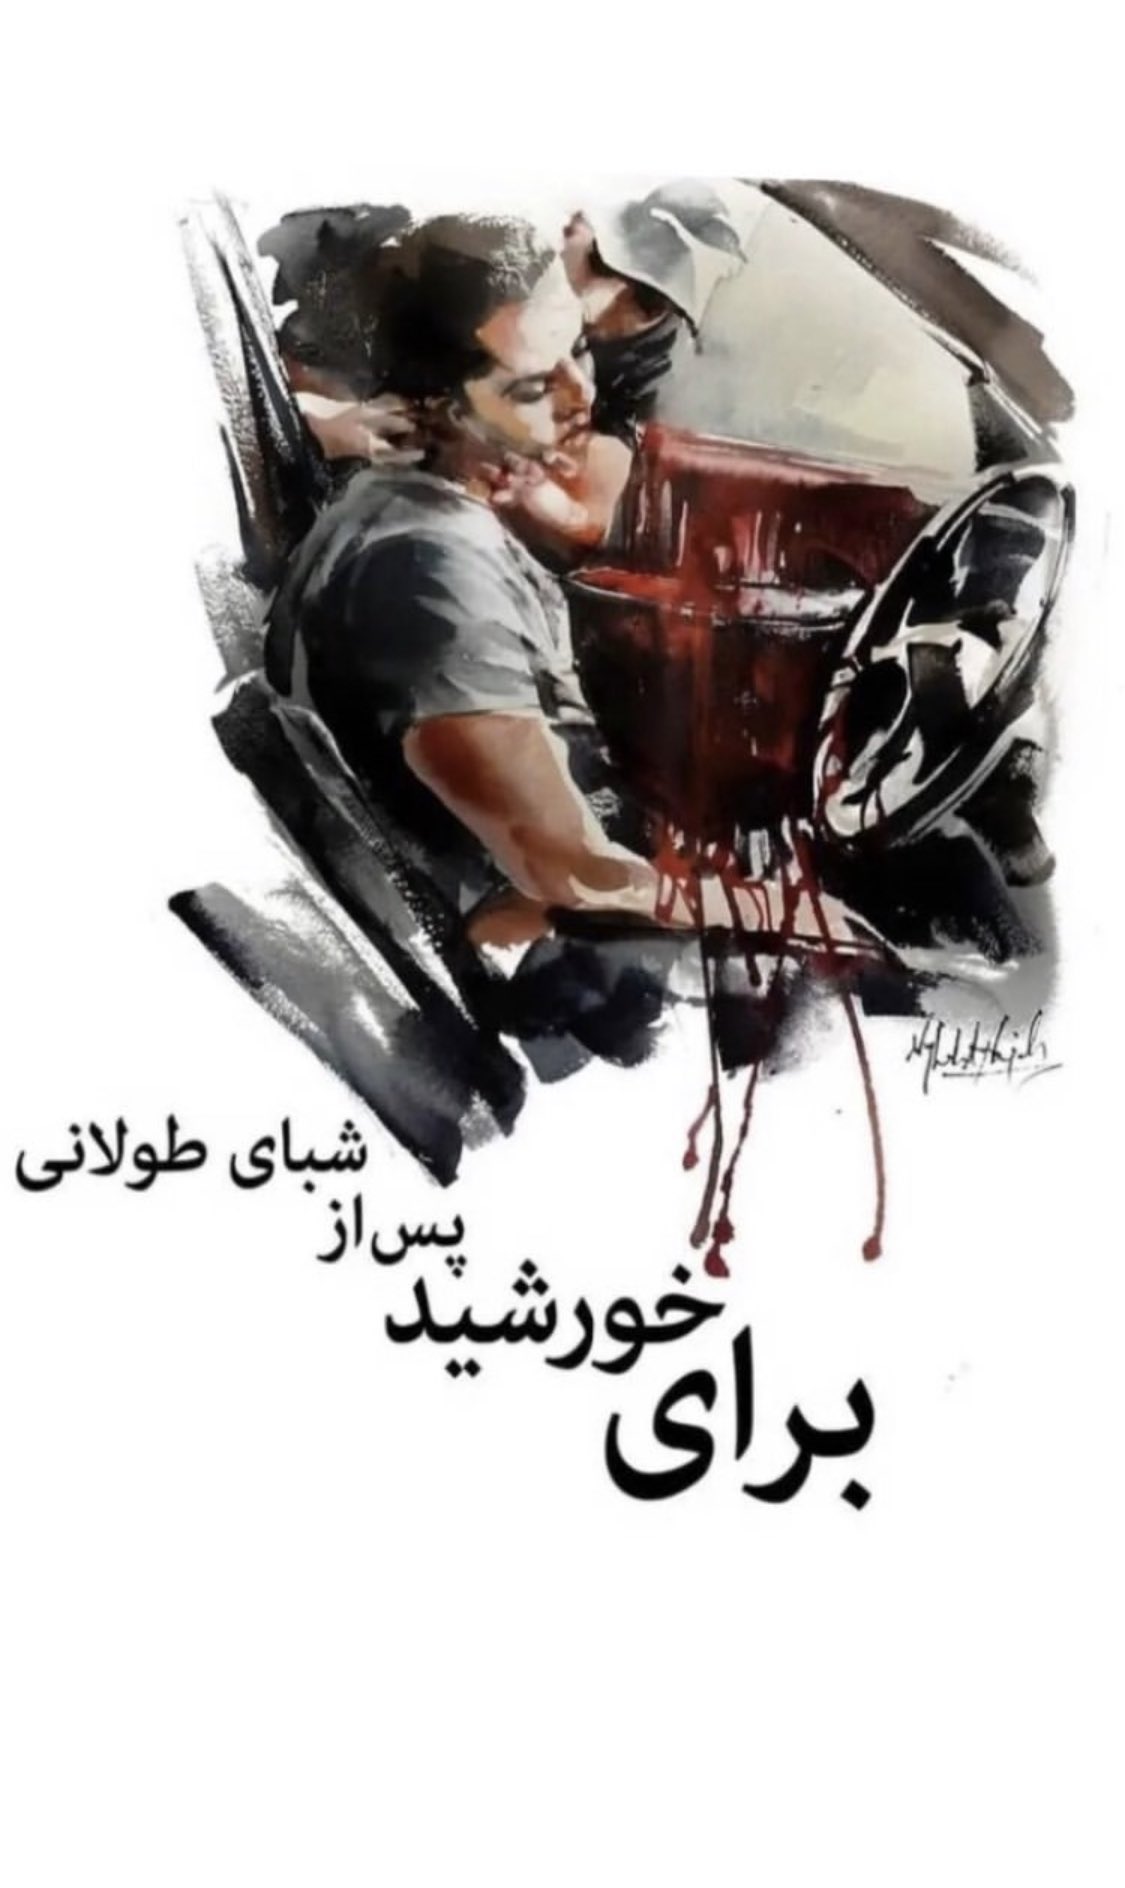 Iran Revolution Art No. FgCWkPqWQAAnq7k